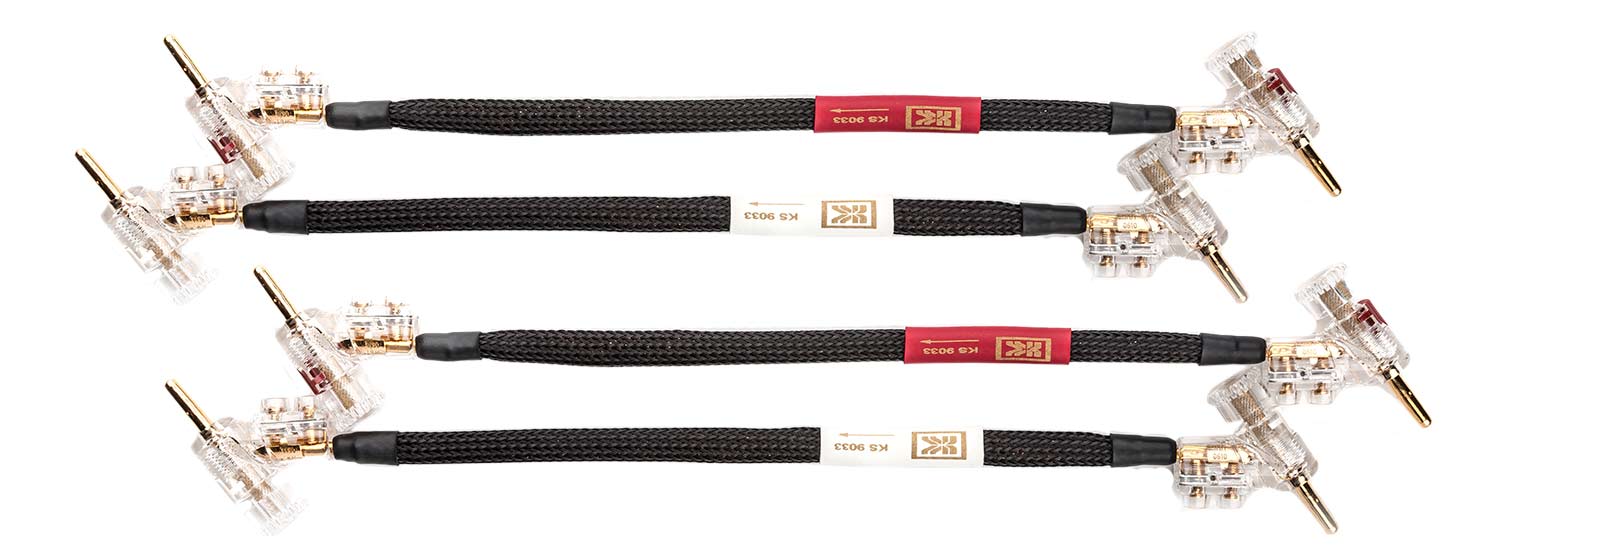 Kimber-KS9033-jumper-cables